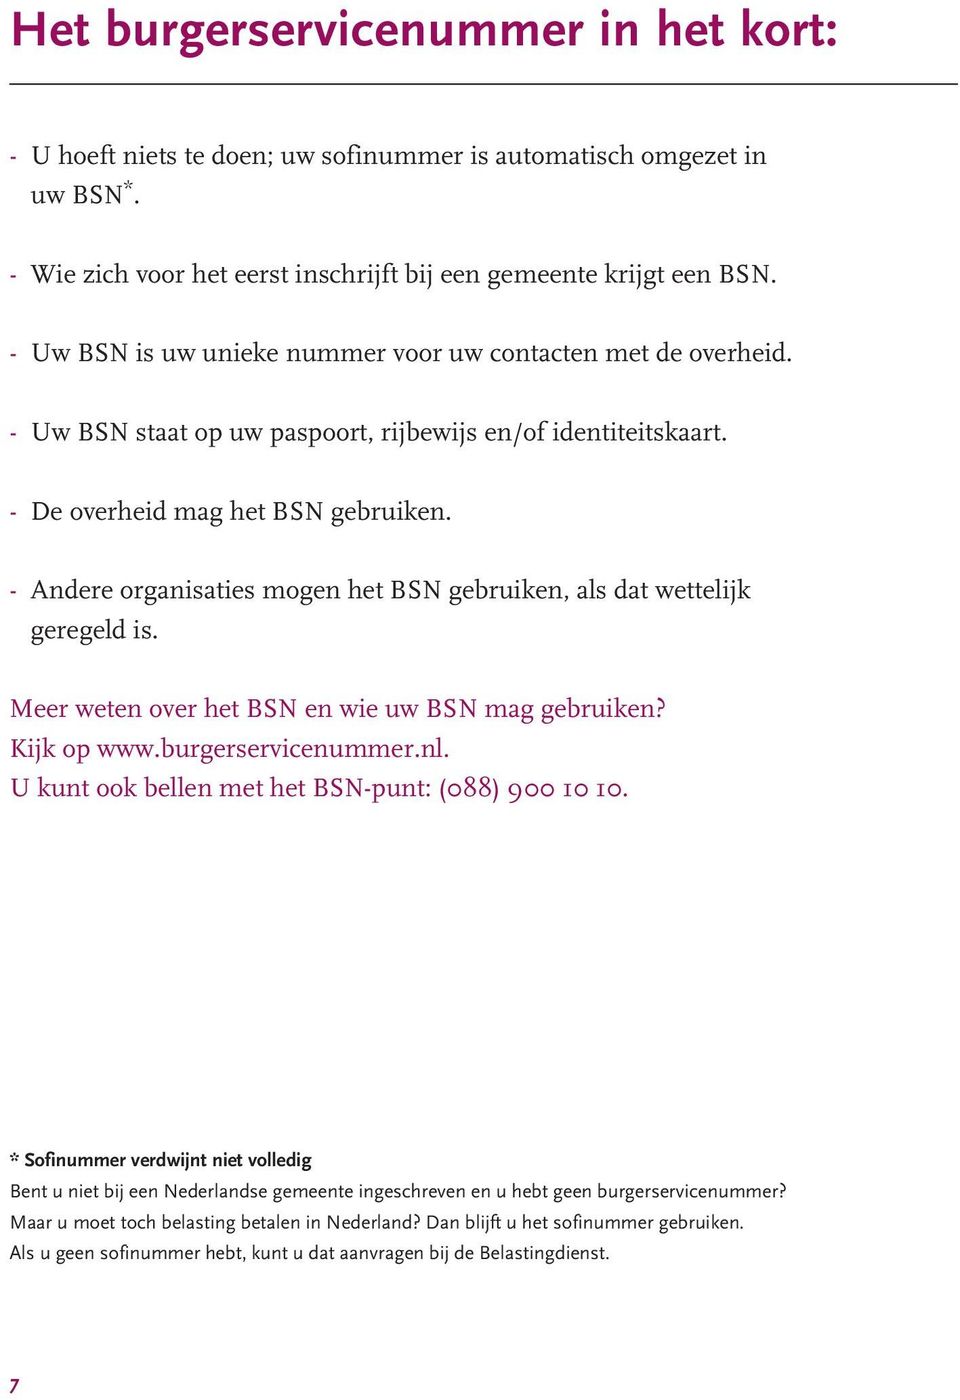 - Andere organisaties mogen het BSN gebruiken, als dat wettelijk geregeld is. Meer weten over het BSN en wie uw BSN mag gebruiken? Kijk op www.burgerservicenummer.nl.